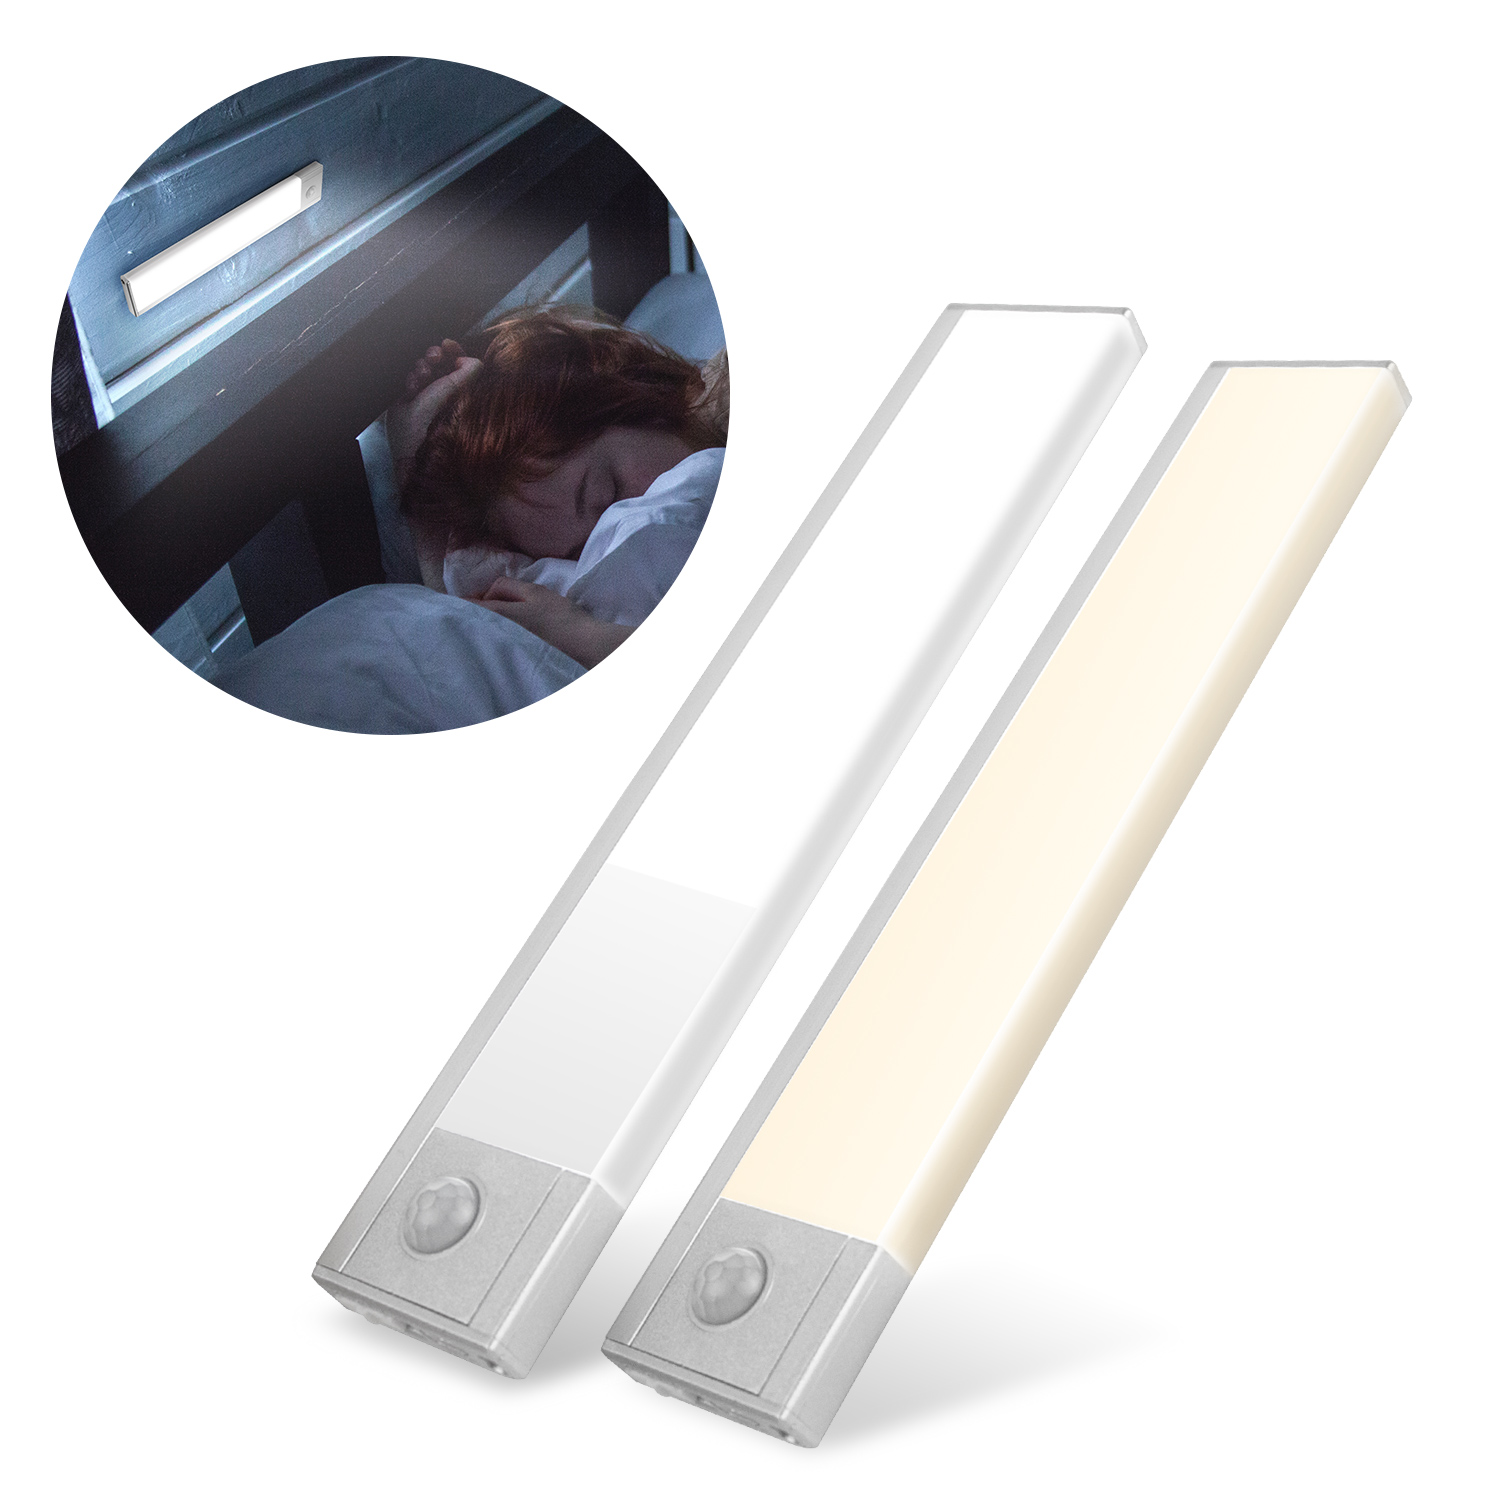 超薄大光源 USB充電磁吸式 輕巧LED感應燈(20cm)-銀色